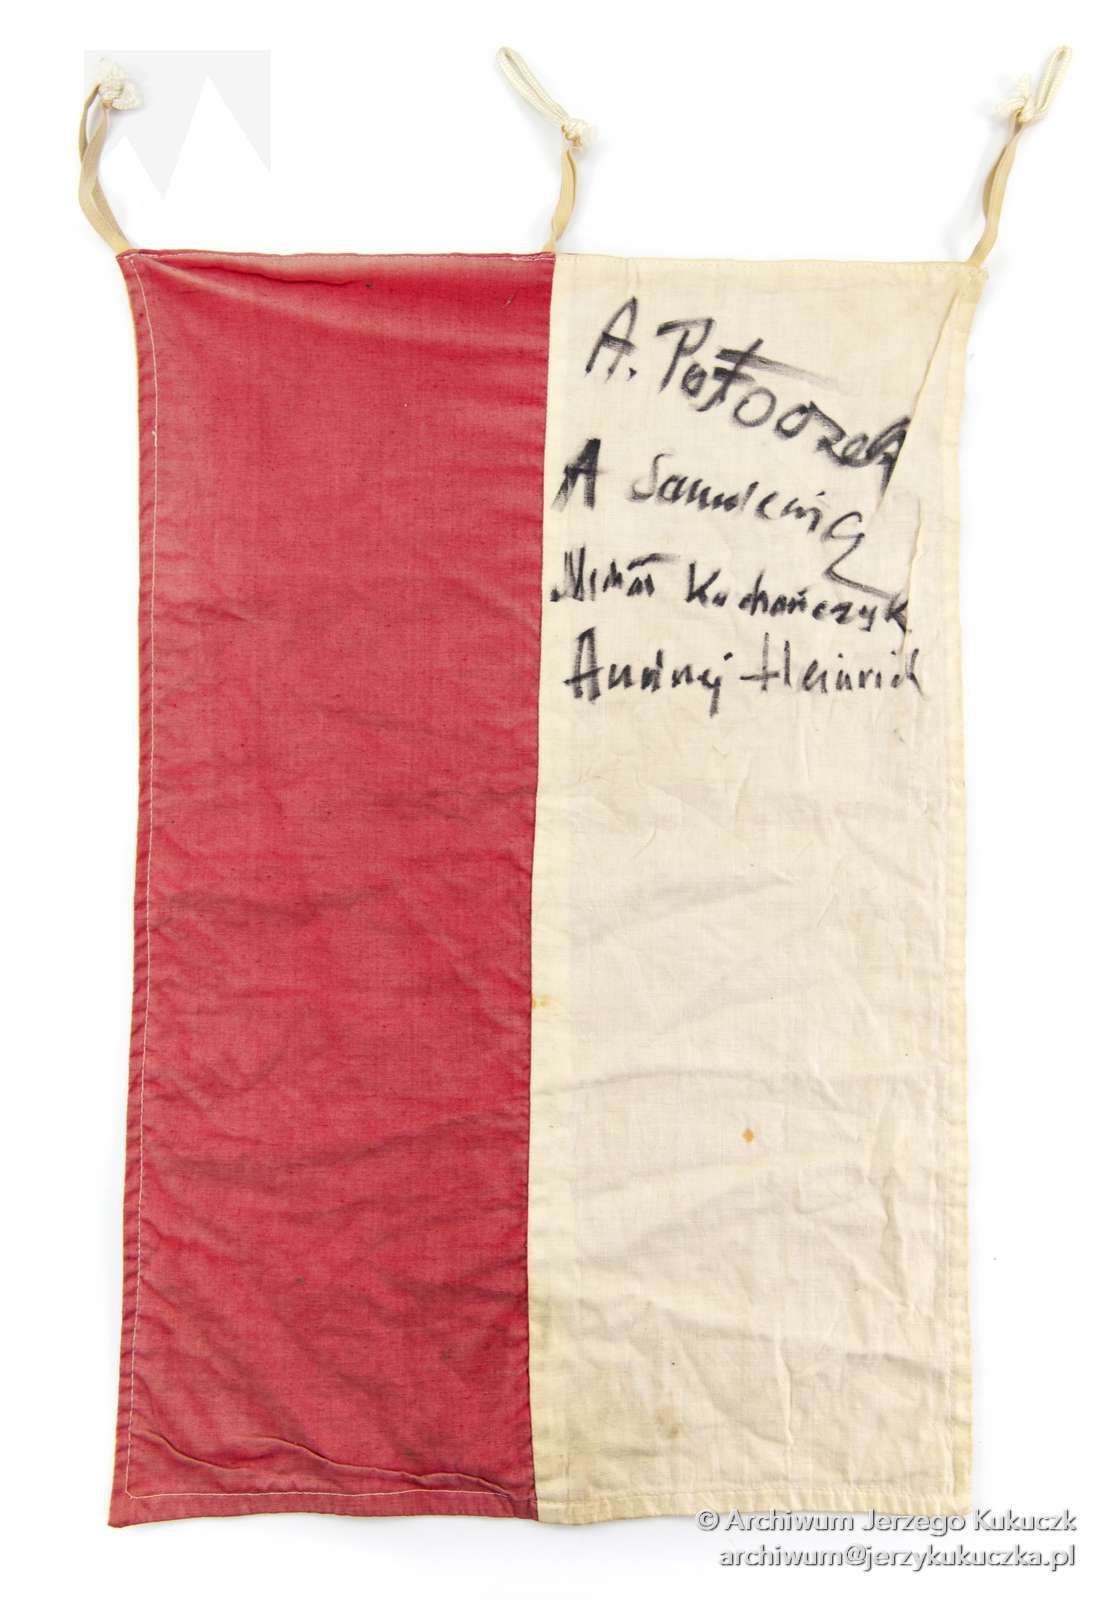 Flaga narodowa z odręcznymi podpisami uczestników wyprawy na Nanga Parbat 1985. Podpisy: Adam Potoczek; Andrzej Samulewicz; Michał Kochańczyk; Andrzej Heinrich